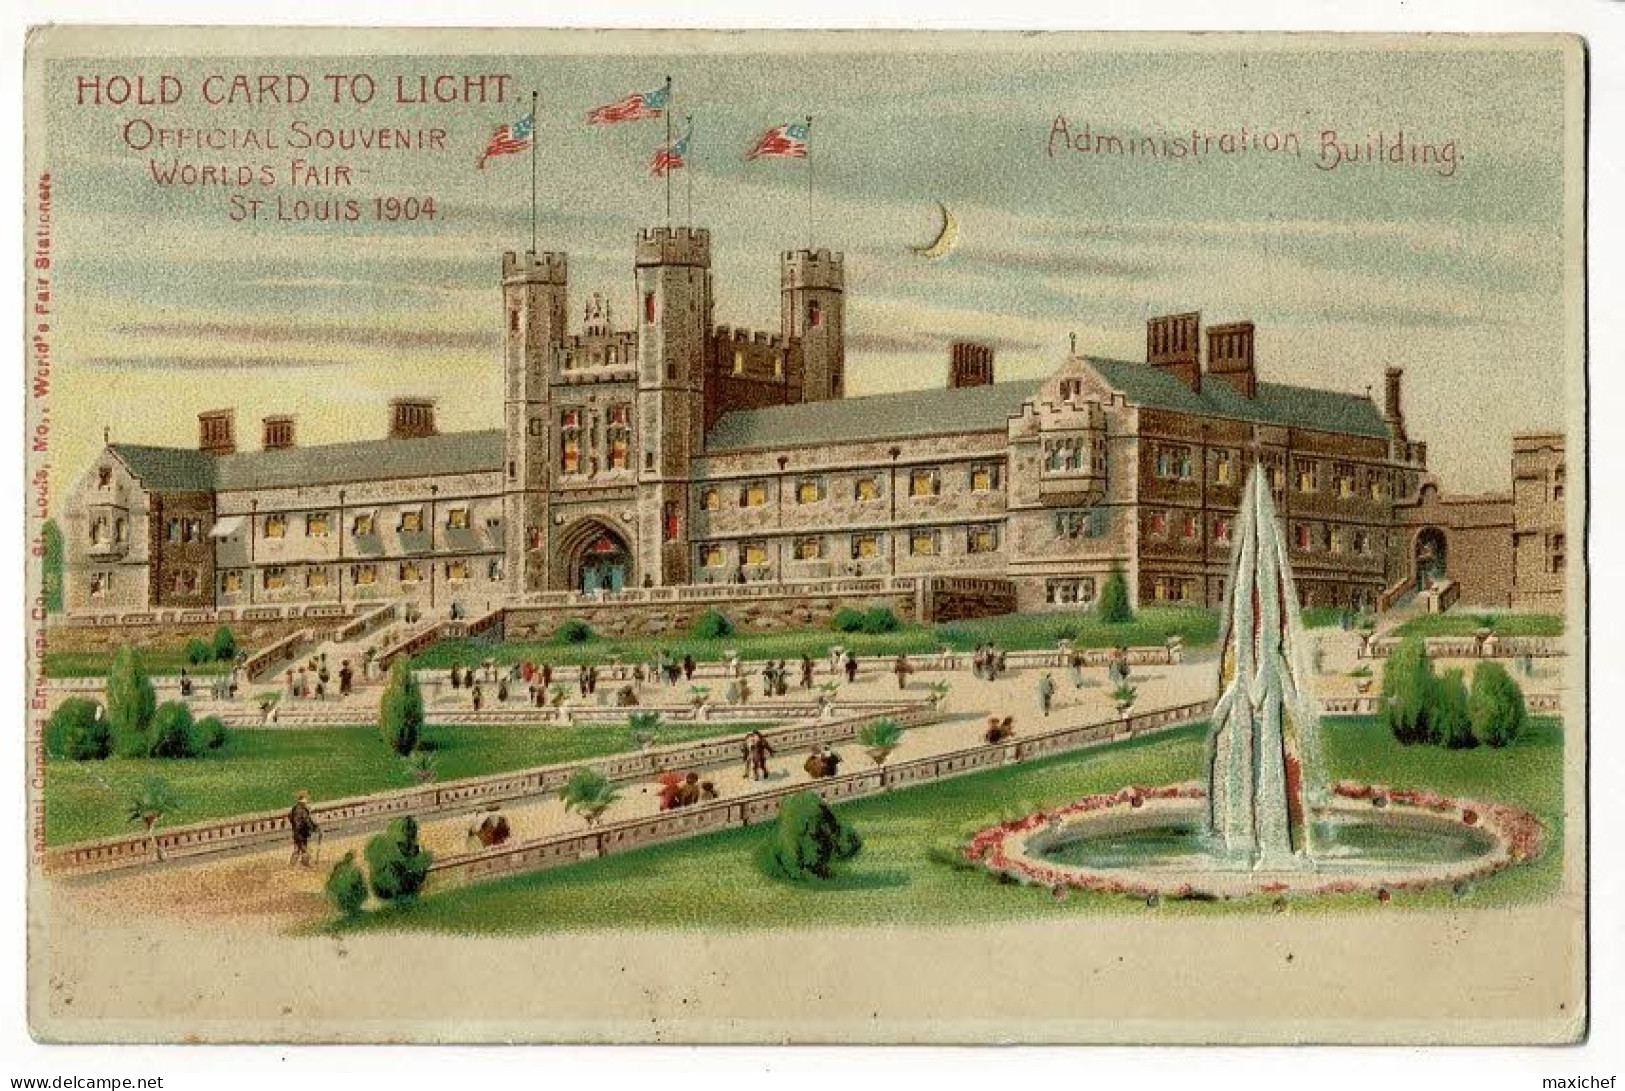 Carte Illustrée Hold Card To Light - Official Souvenir Worlds Fair St Louis 1904 - Administration Building - Pas Circulé - Halt Gegen Das Licht/Durchscheink.